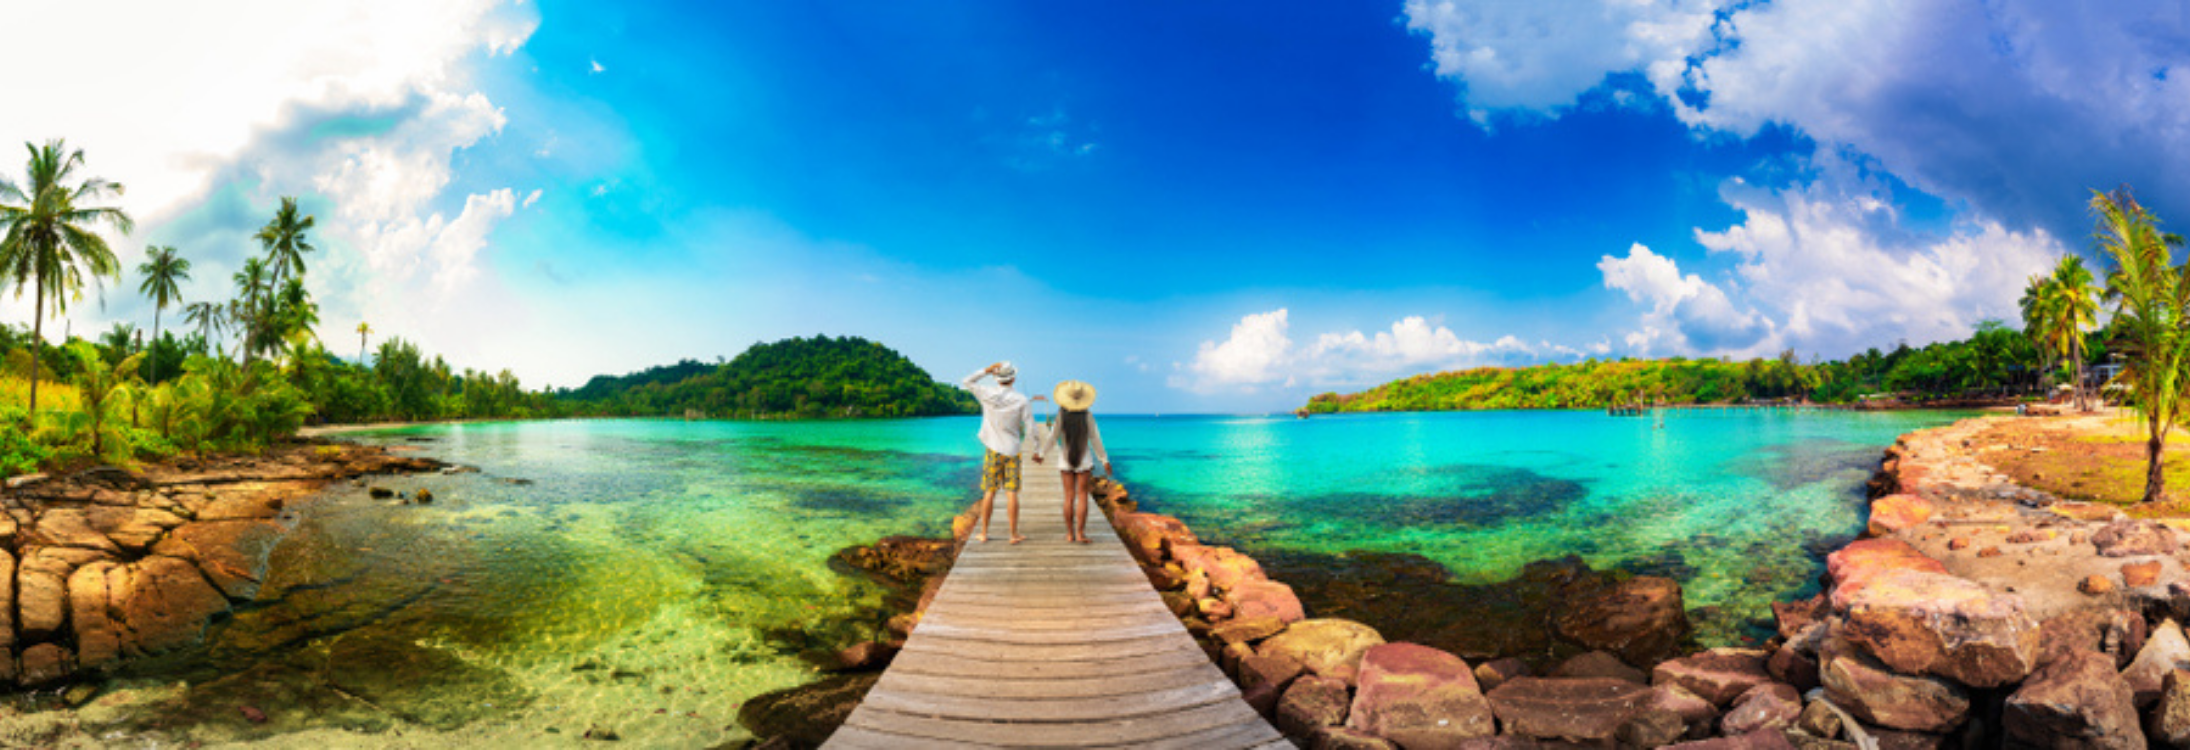 Top honeymoon destinations in 2015 - Fiji